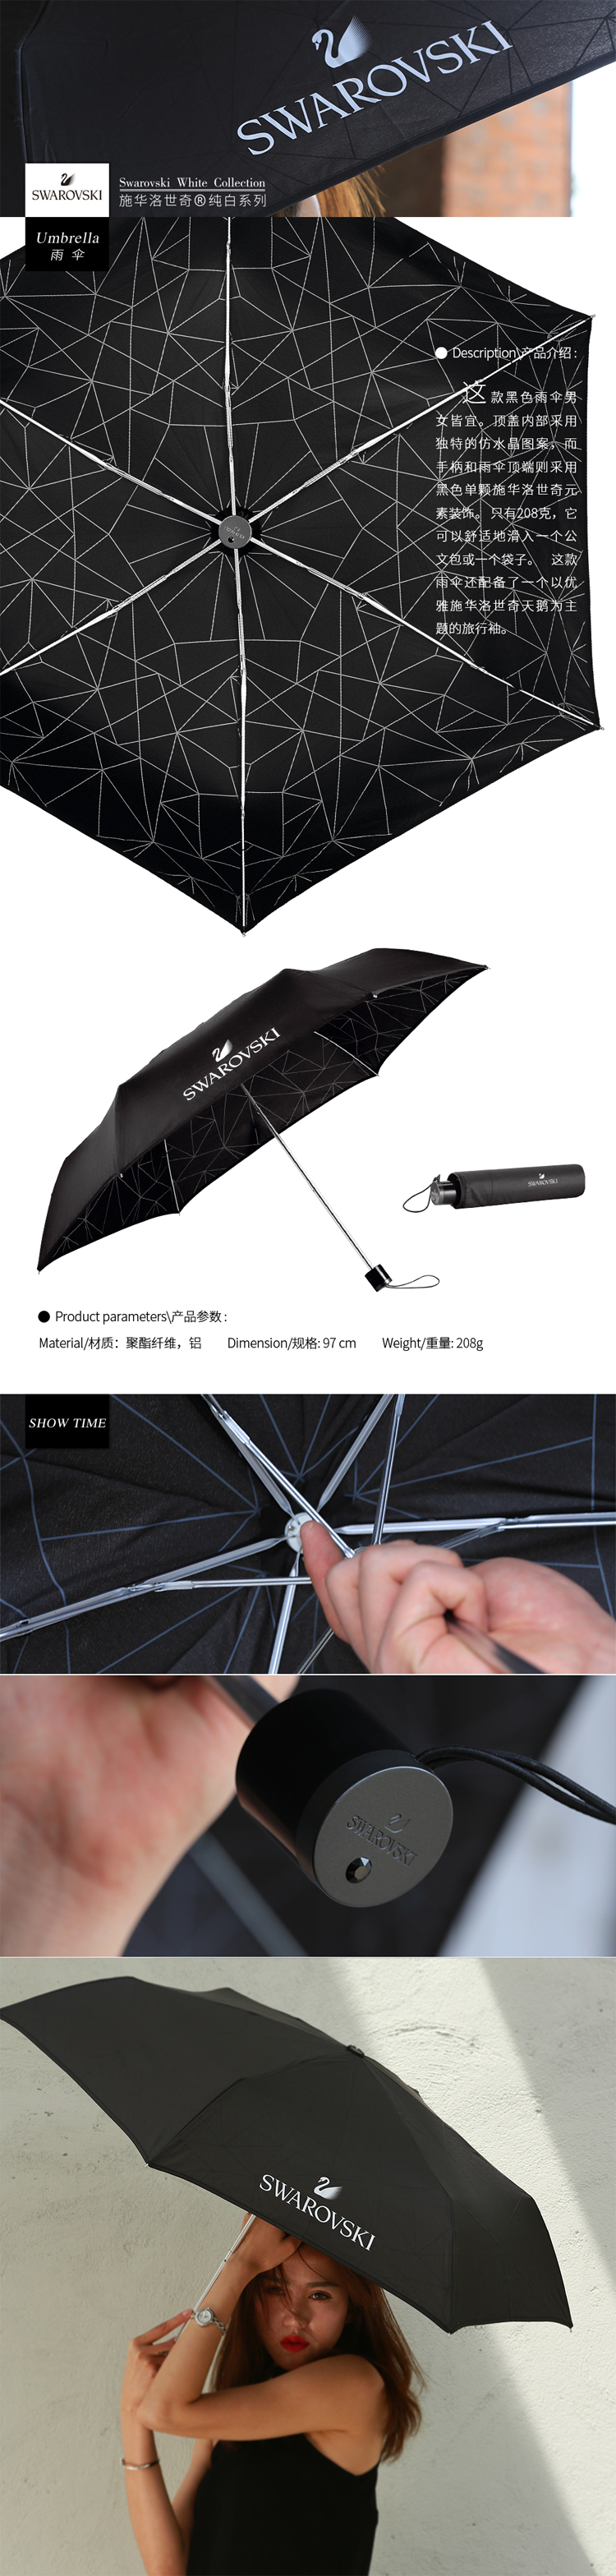 雨伞-黑11111111.jpg